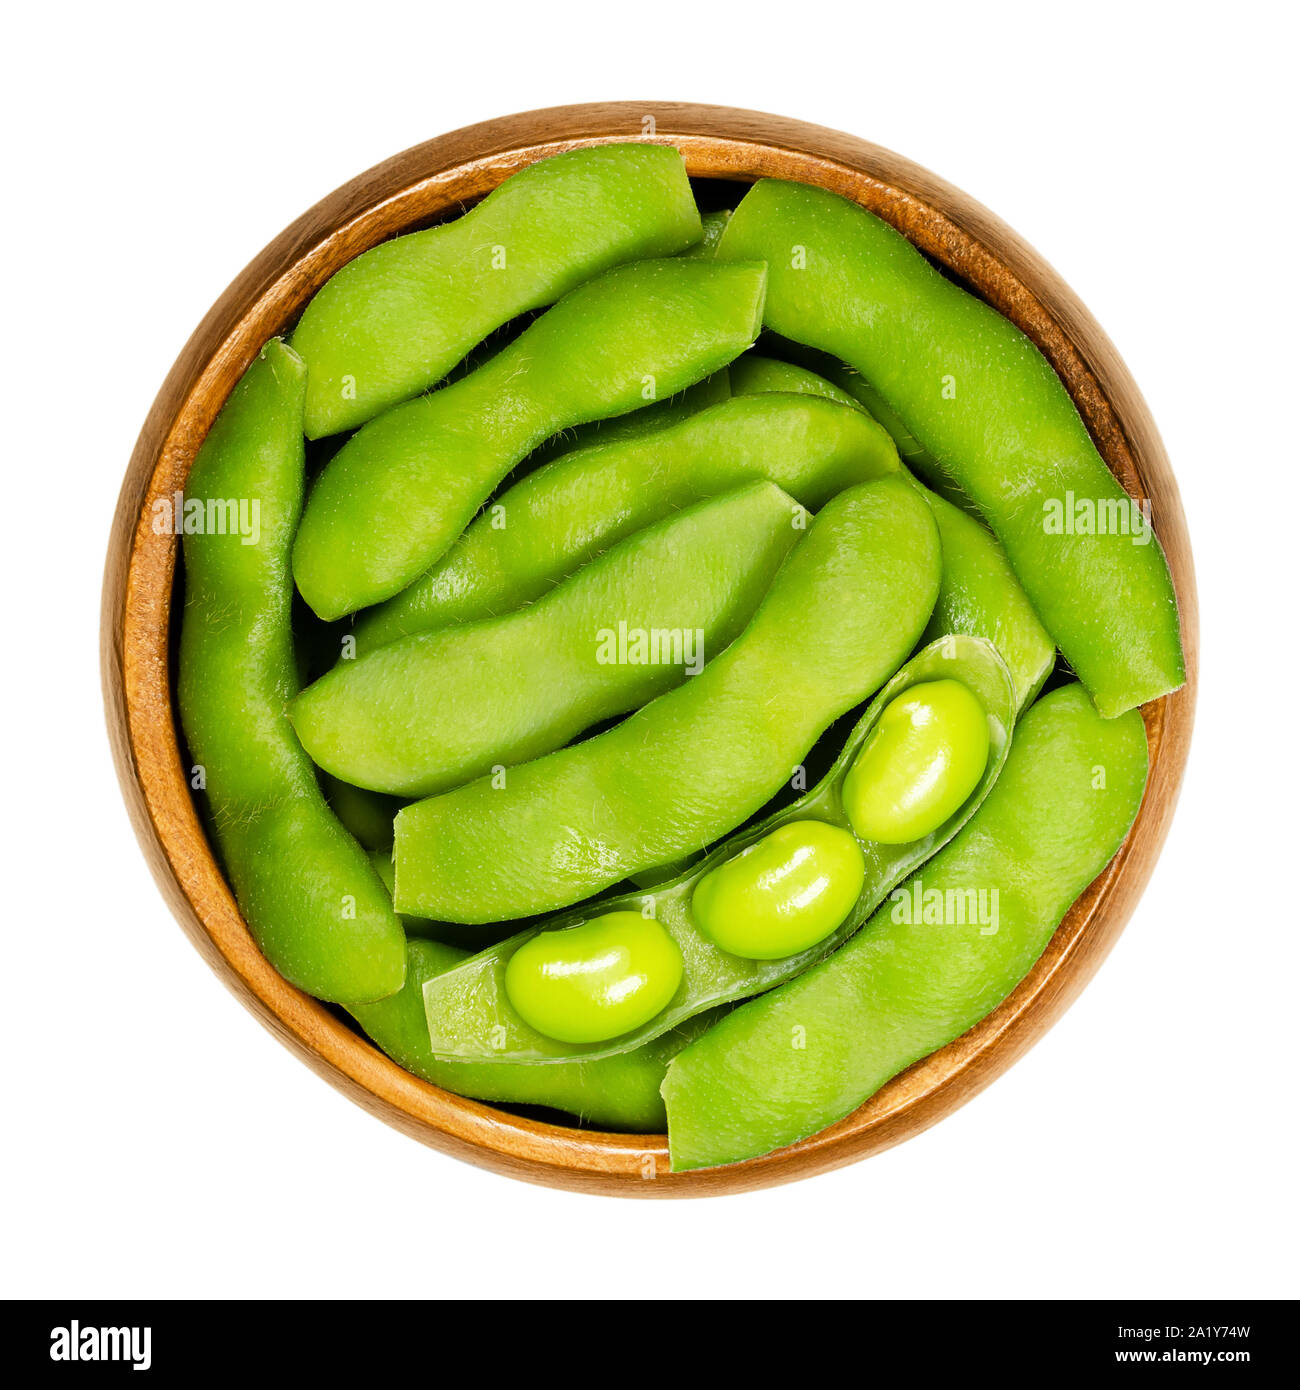 Le soja vert dans le pod, edamame, dans bol en bois. Les graines de soja immatures, aussi Maodou. Glycine max, une légumineuse, comestibles après cuisson. Source de protéines. Banque D'Images